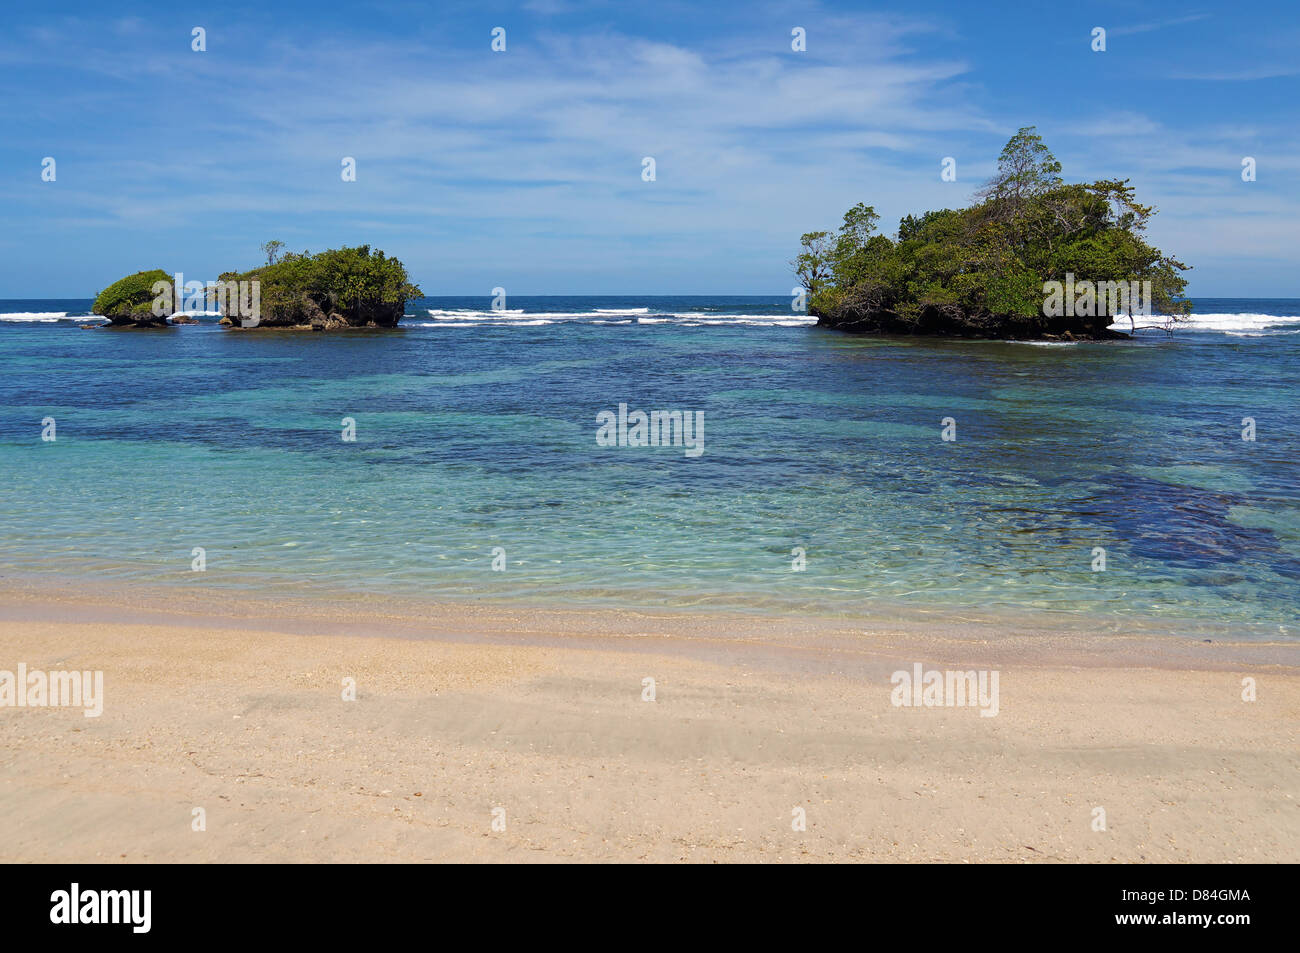 Sandstrand mit kleinen Inseln in den klaren Gewässern der Karibik, Insel Bastimentos, Bocas del Toro, Panama Stockfoto